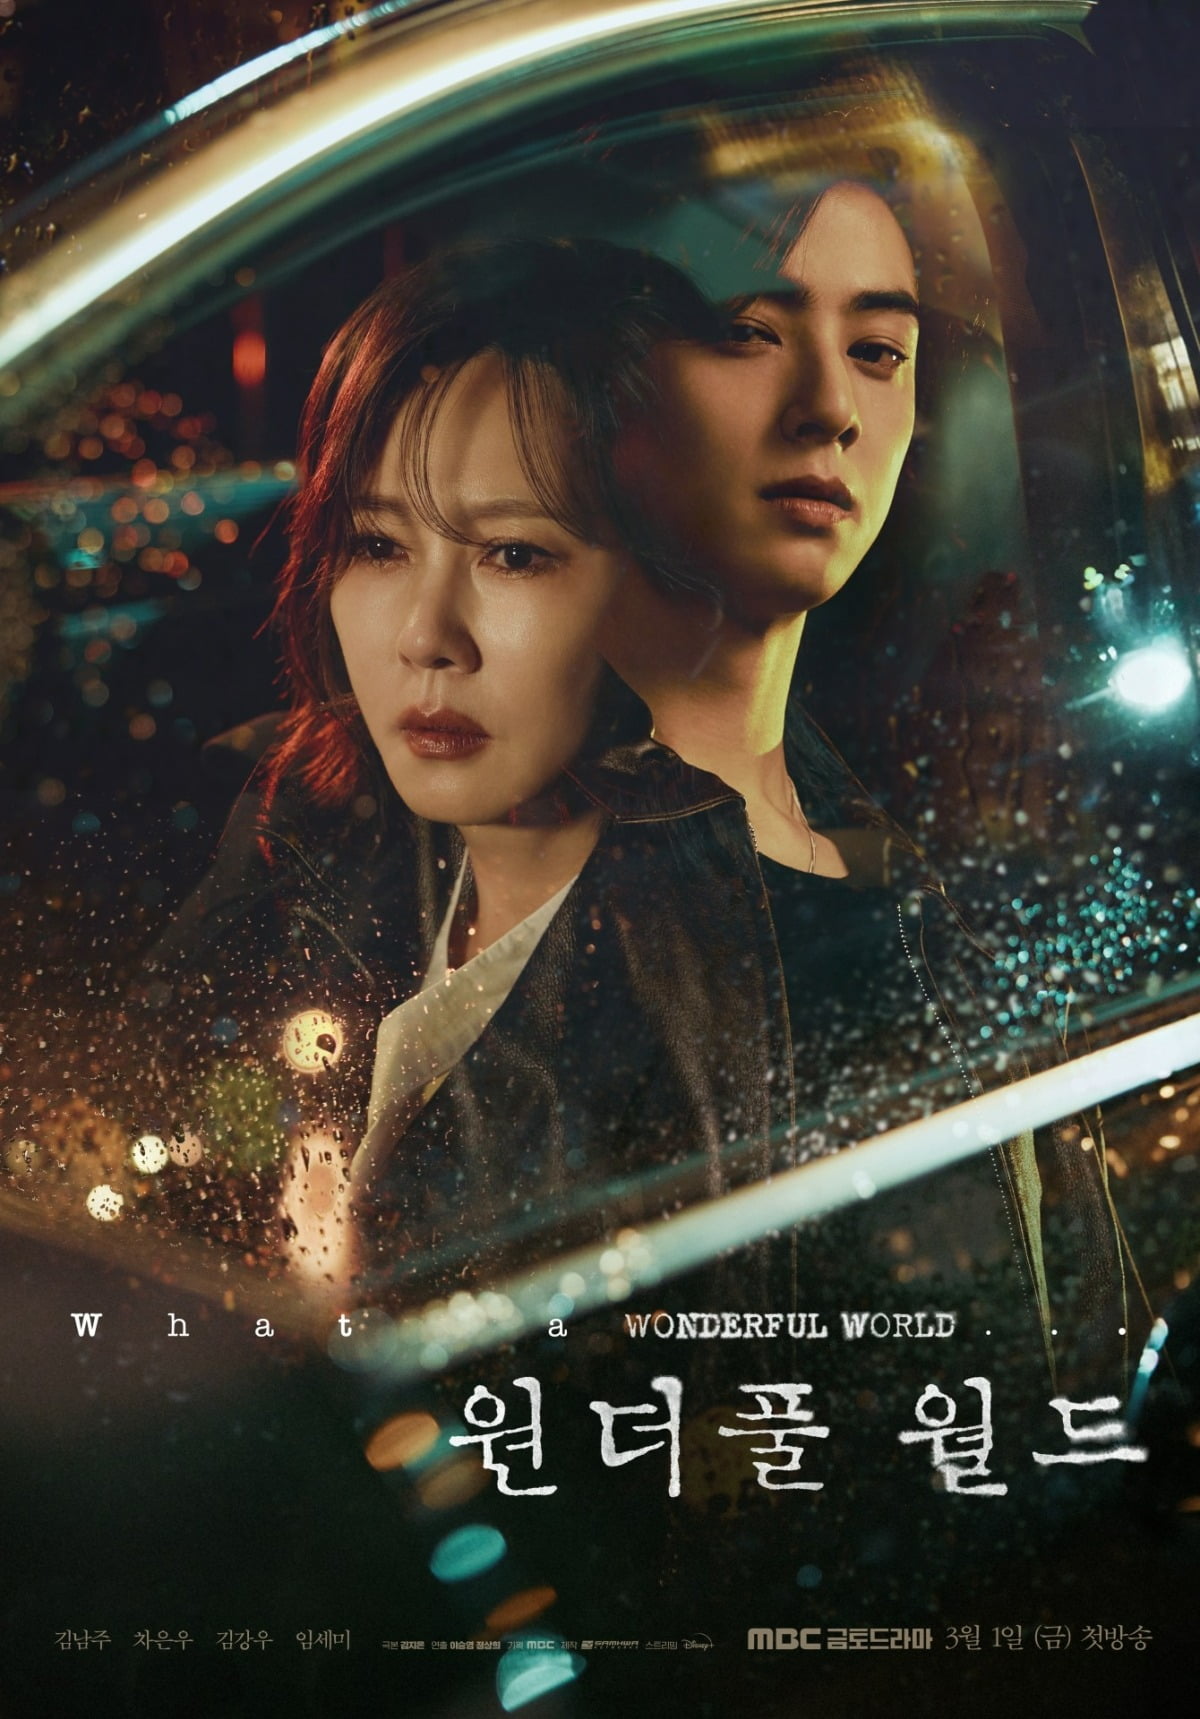 Kim Nam-joo and Cha Eun-woo's 'Wonderful World' OST pre-order begins